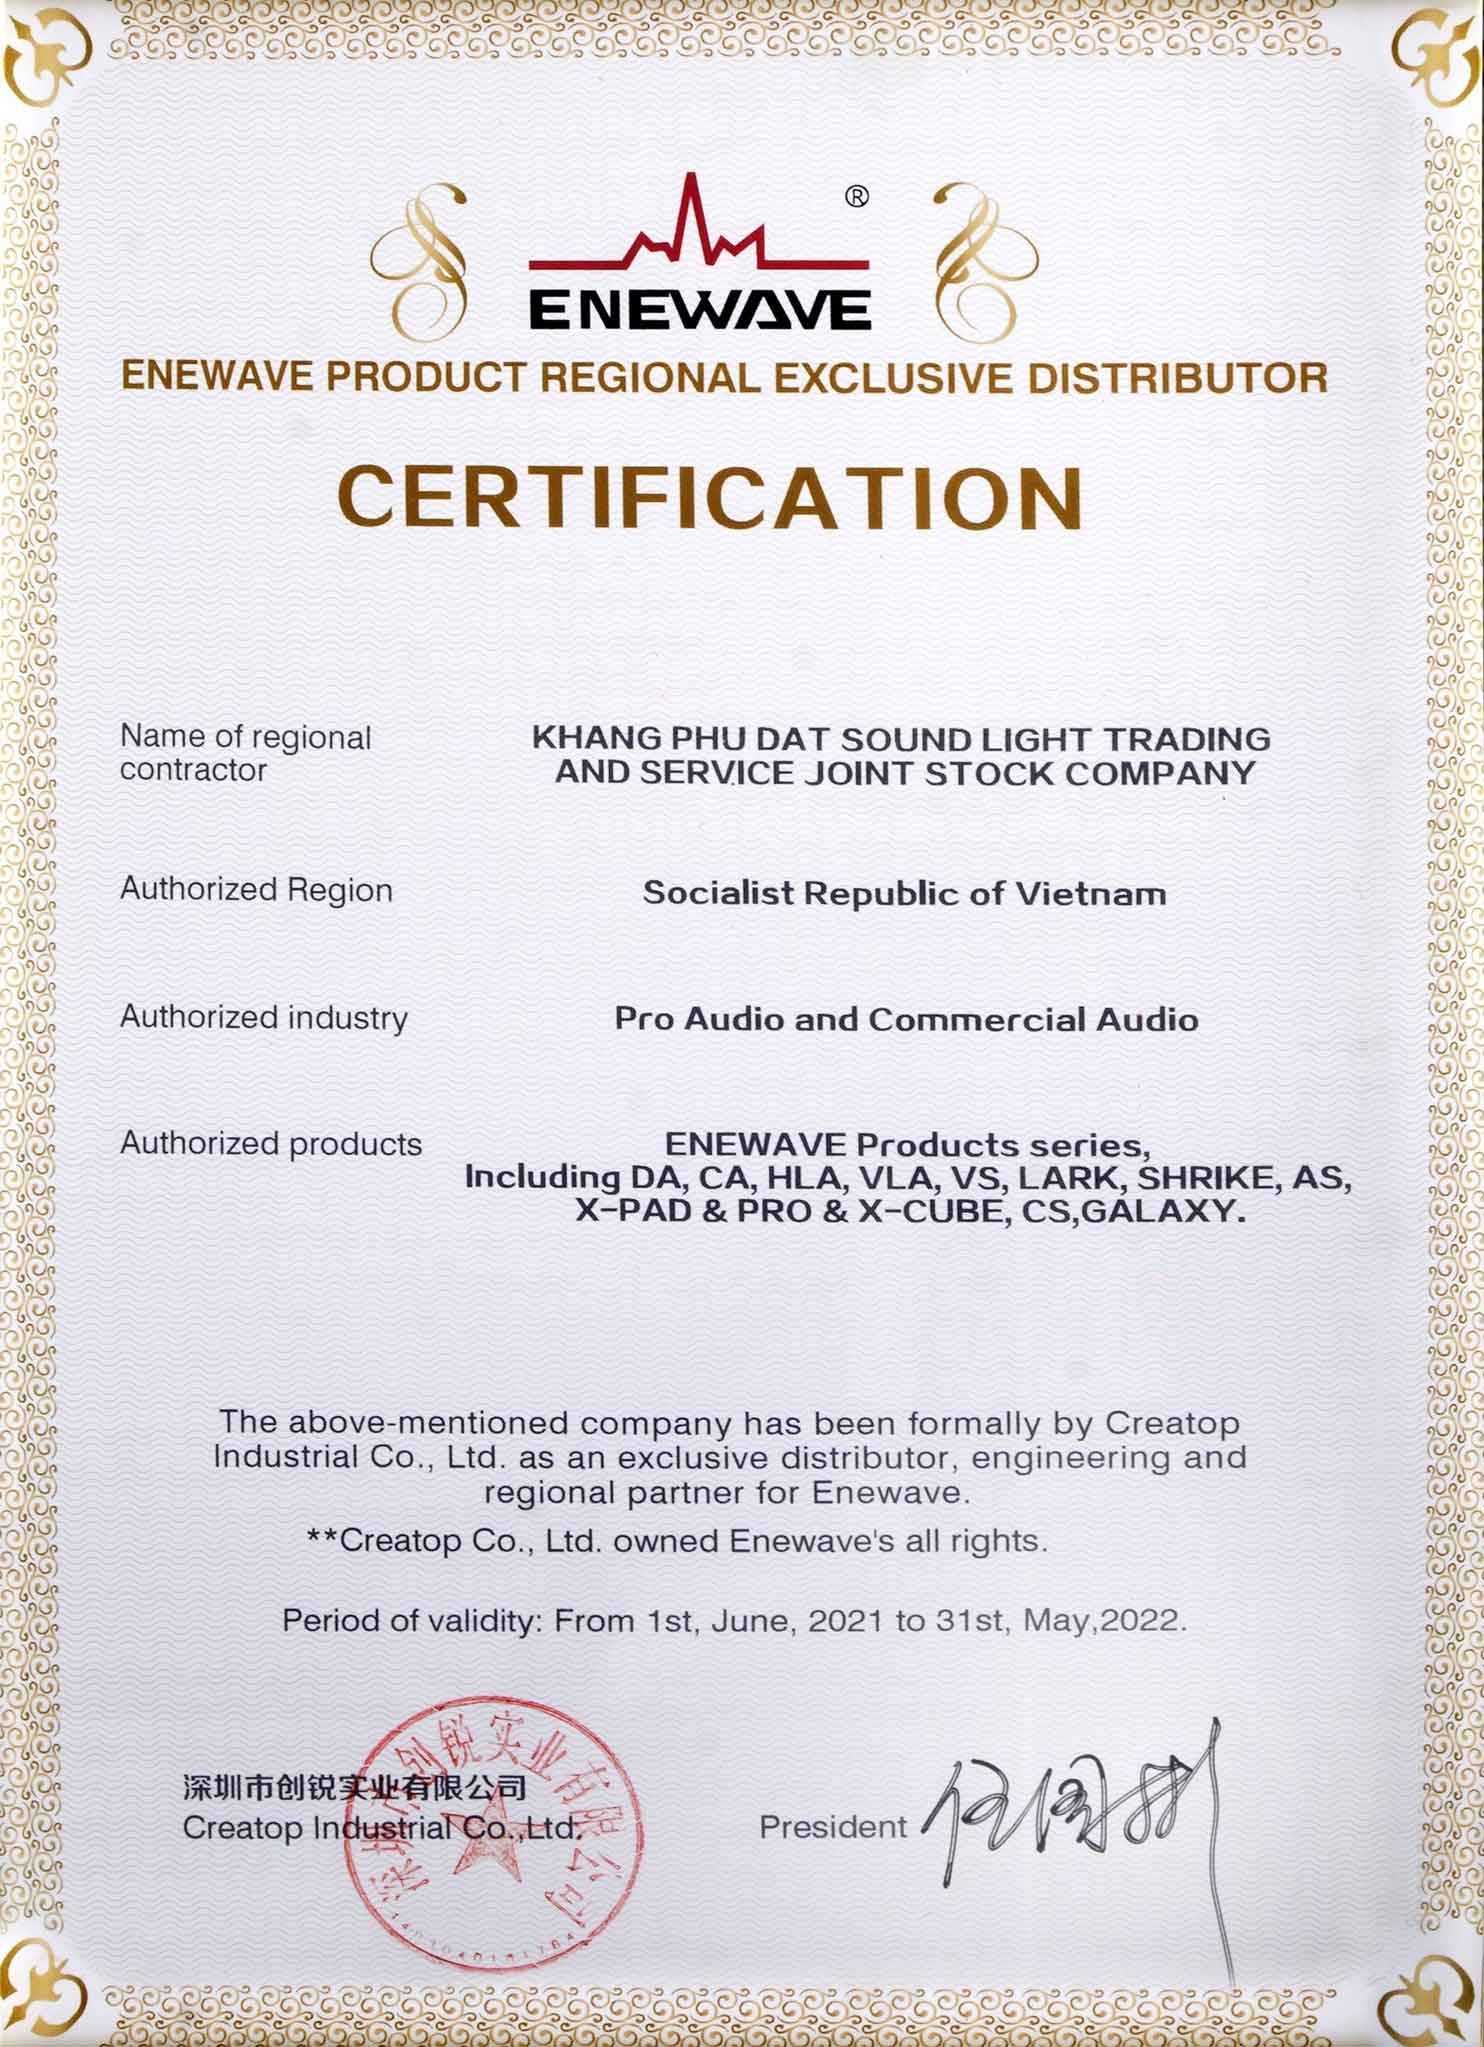 Chứng nhận sản phẩm độc quyền Enewave tại Việt Nam